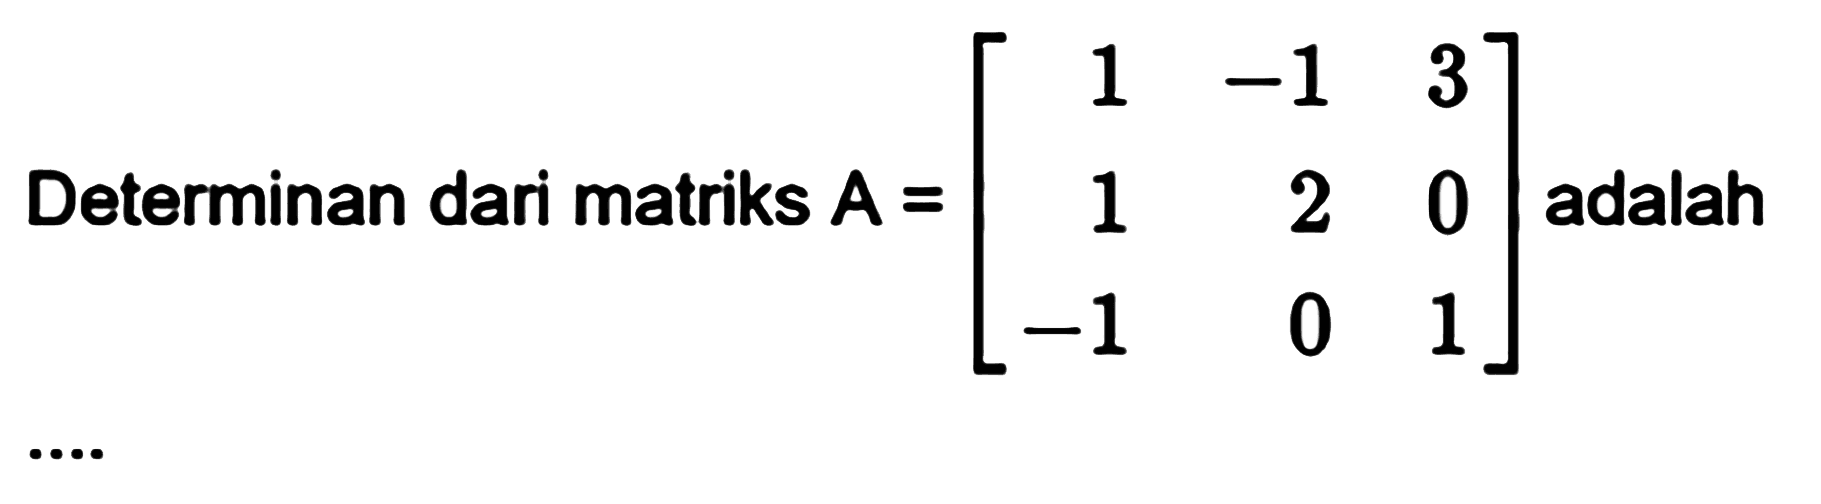 Determinan dari matriks A=[1 -1 3 1 2 0 -1 0 1] adalah ...